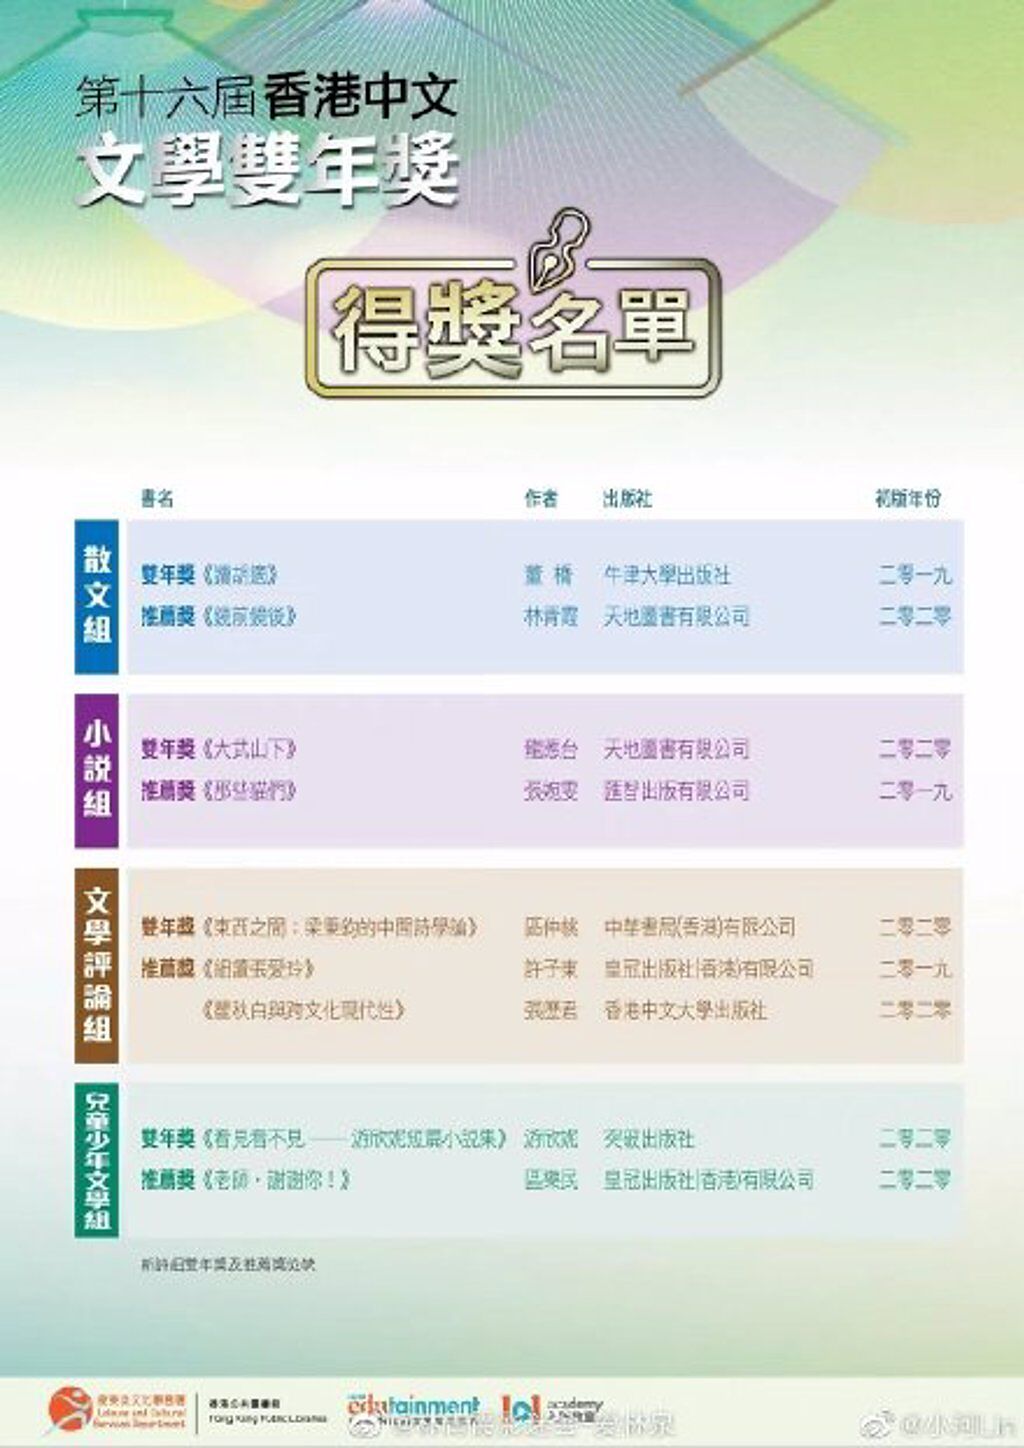 第16屆香港中文文學雙年獎得獎名單。(圖/微博)